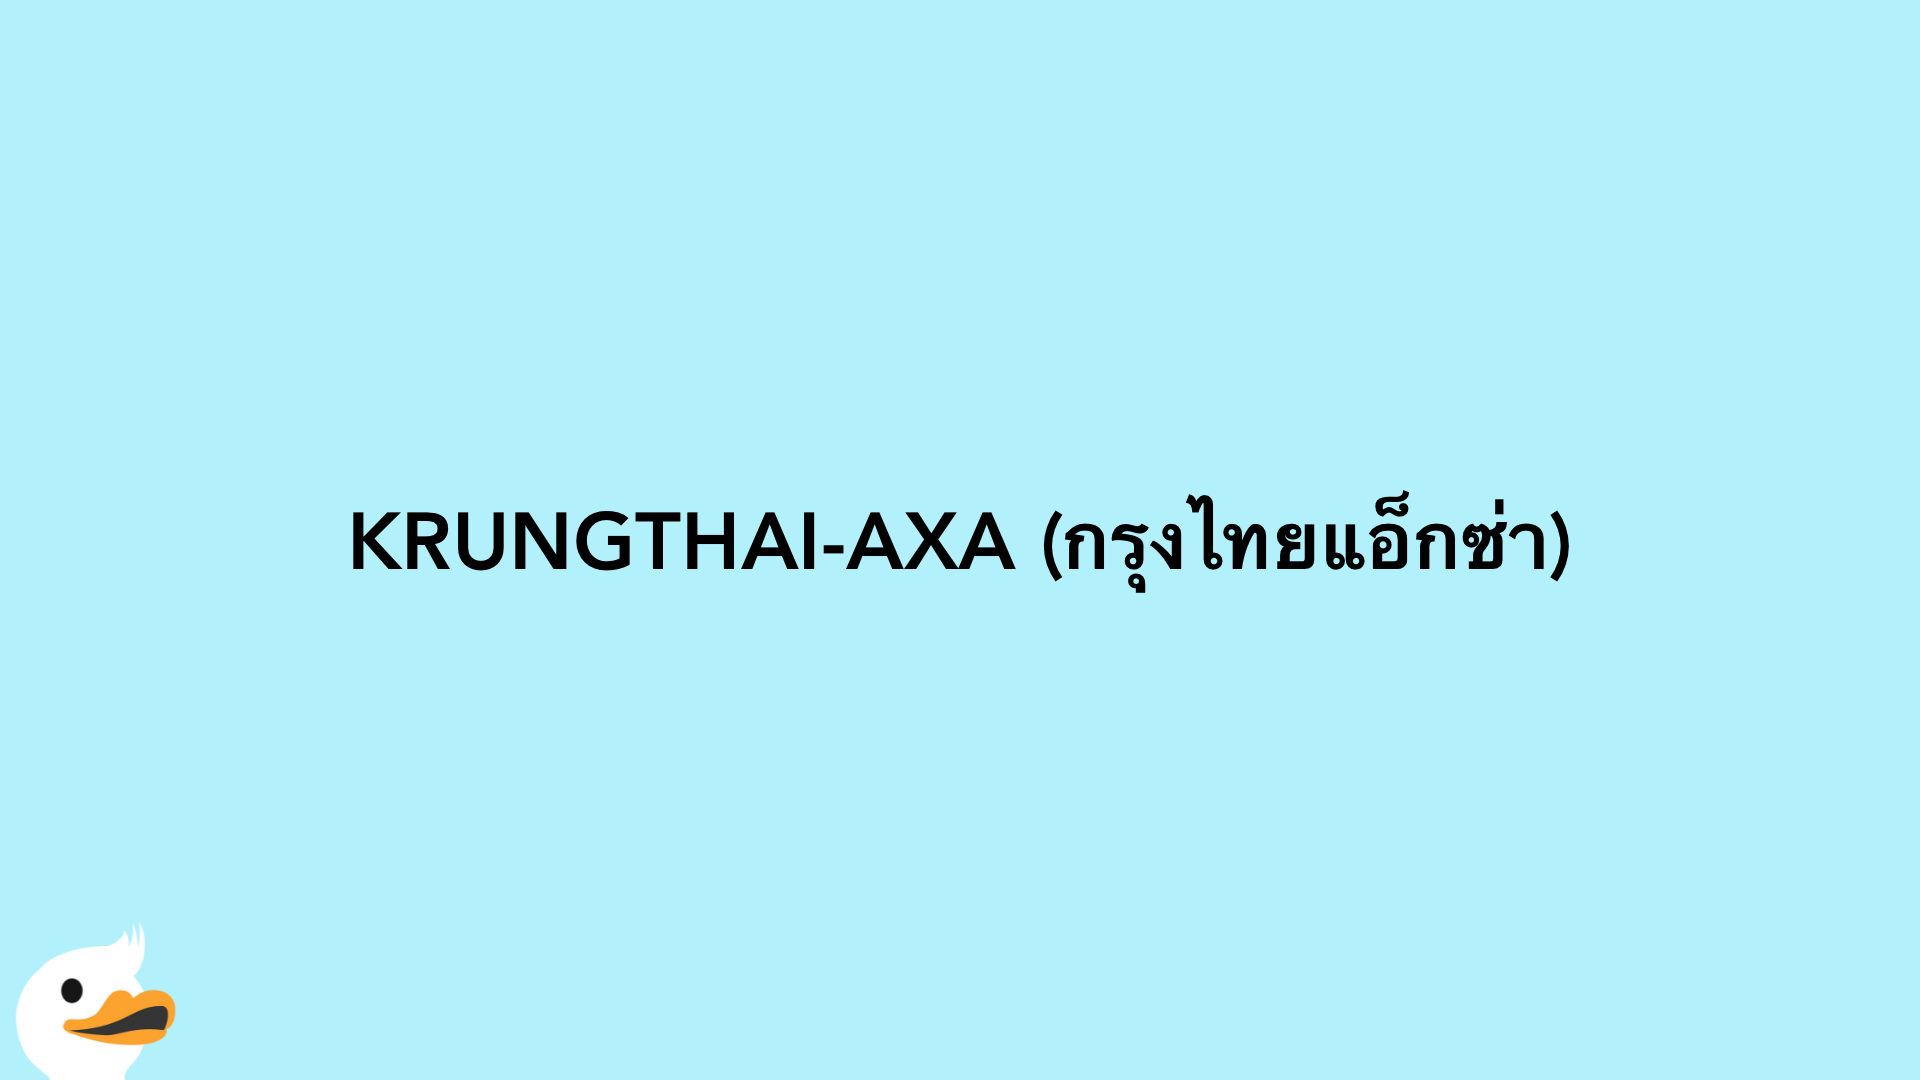 KRUNGTHAI-AXA (กรุงไทยแอ็กซ่า)